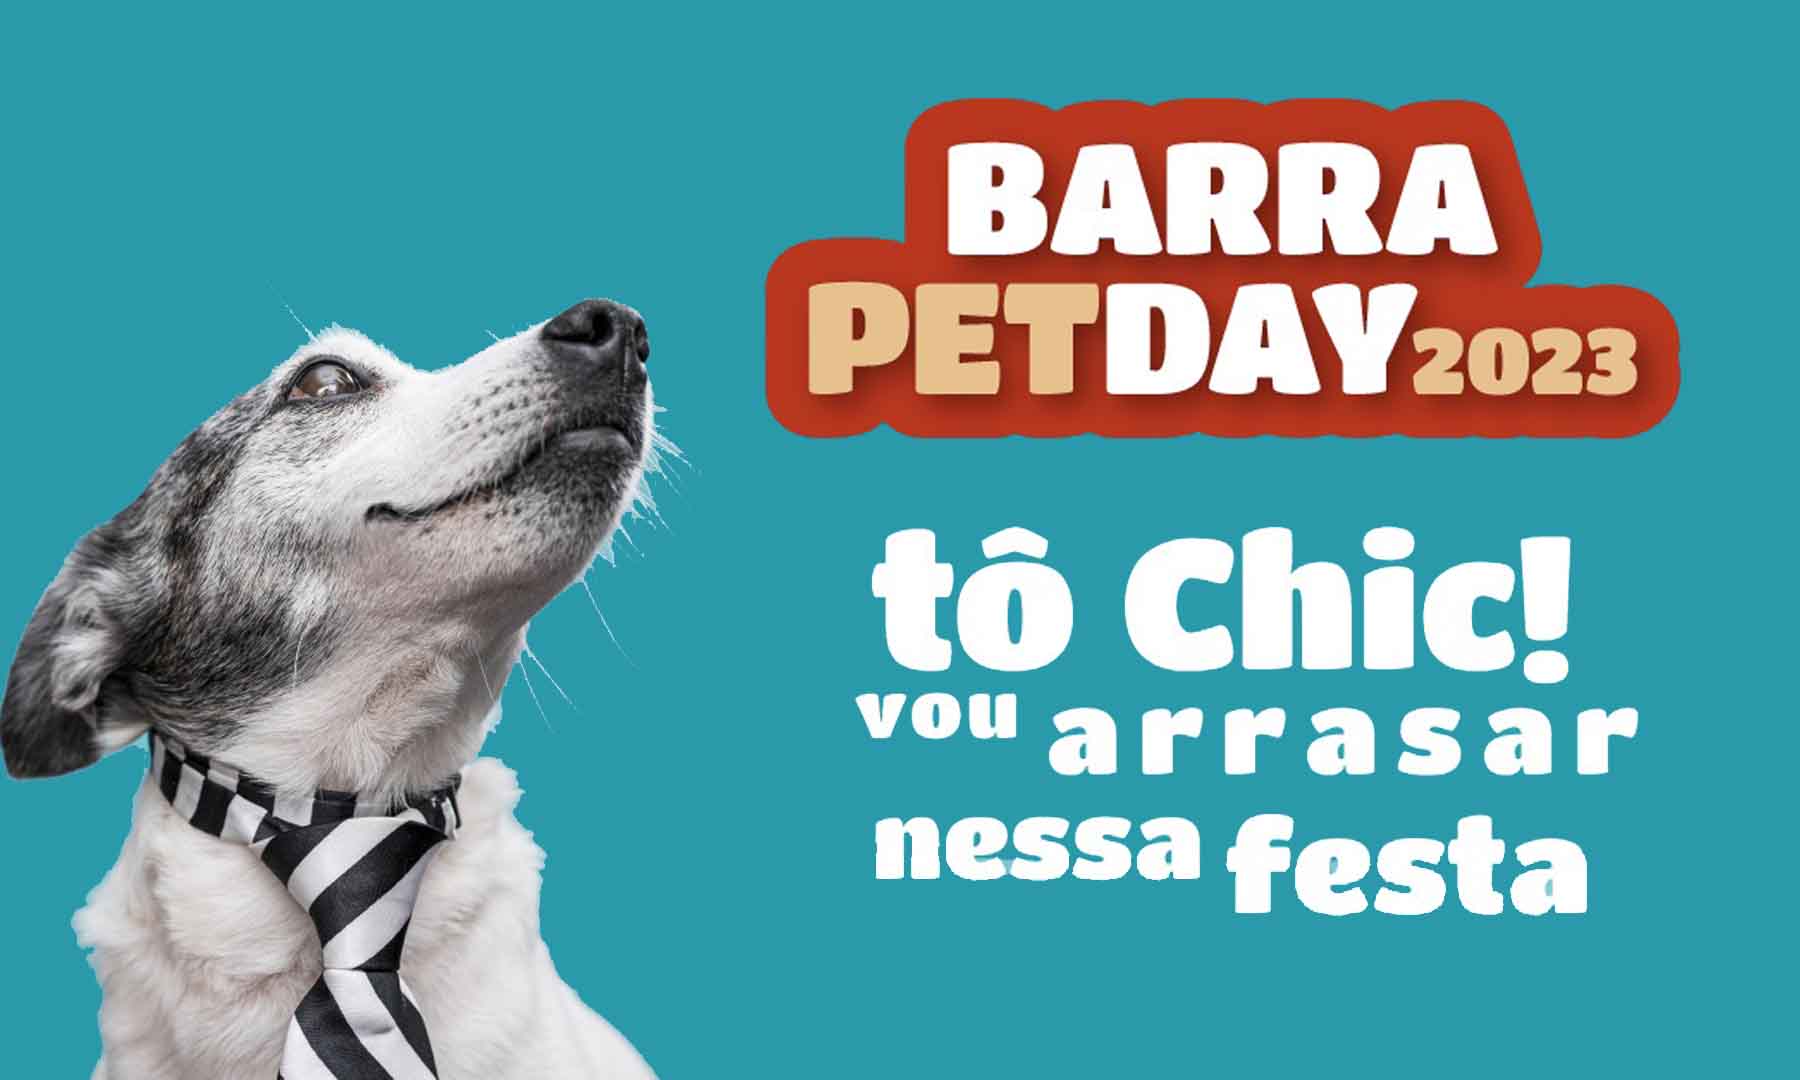 Barra Petday 2023: Um dia festivo para celebrar o amor pelos animais!